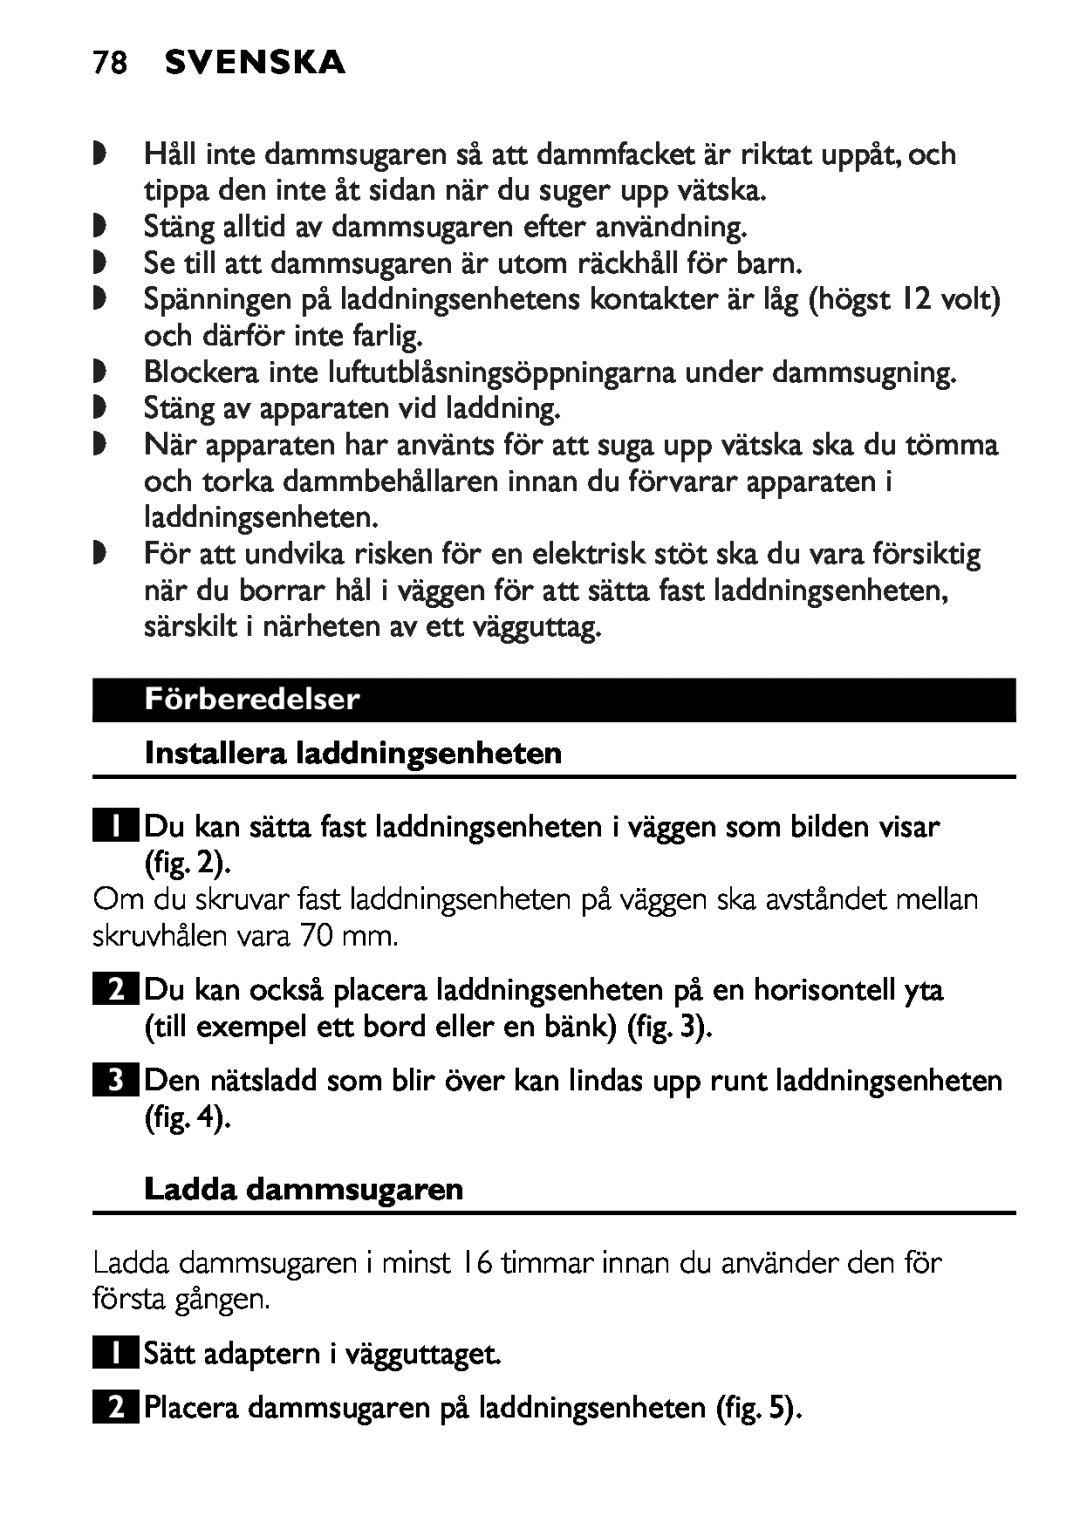 Philips FC6055 manual 78SVENSKA, Förberedelser, Installera laddningsenheten, Ladda dammsugaren 